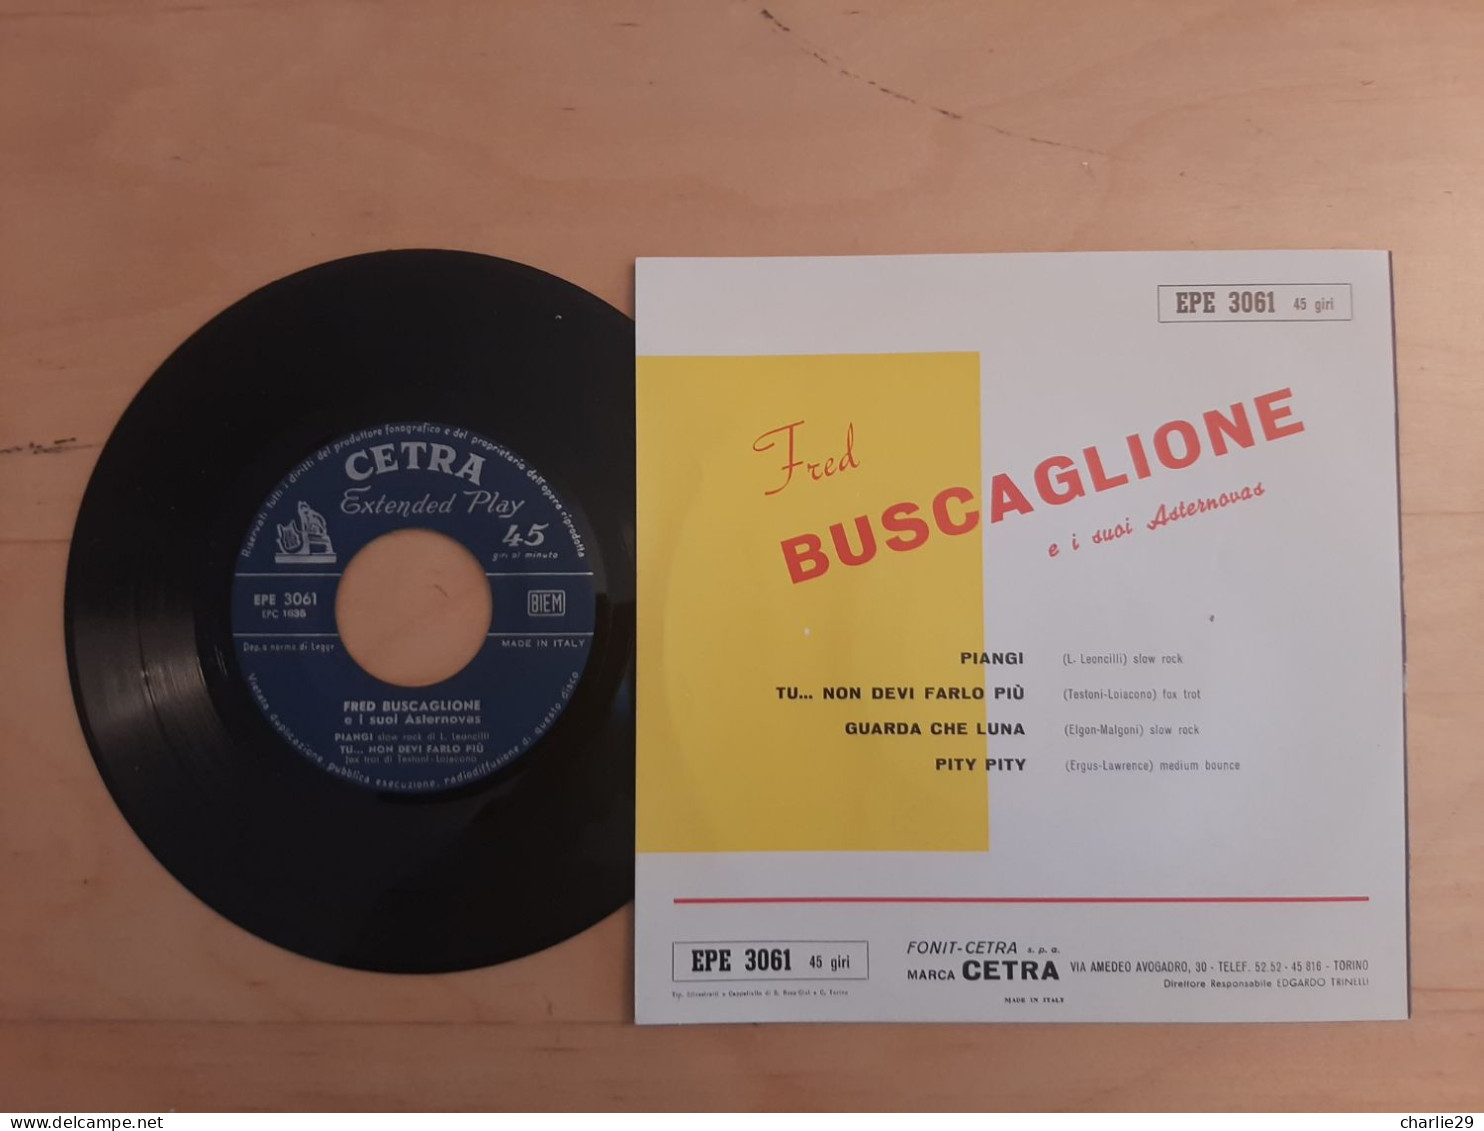 Fred Buscaglione E I Suoi Asternovas - Vinile 45 Giri - Anno 1959 - Other - Italian Music